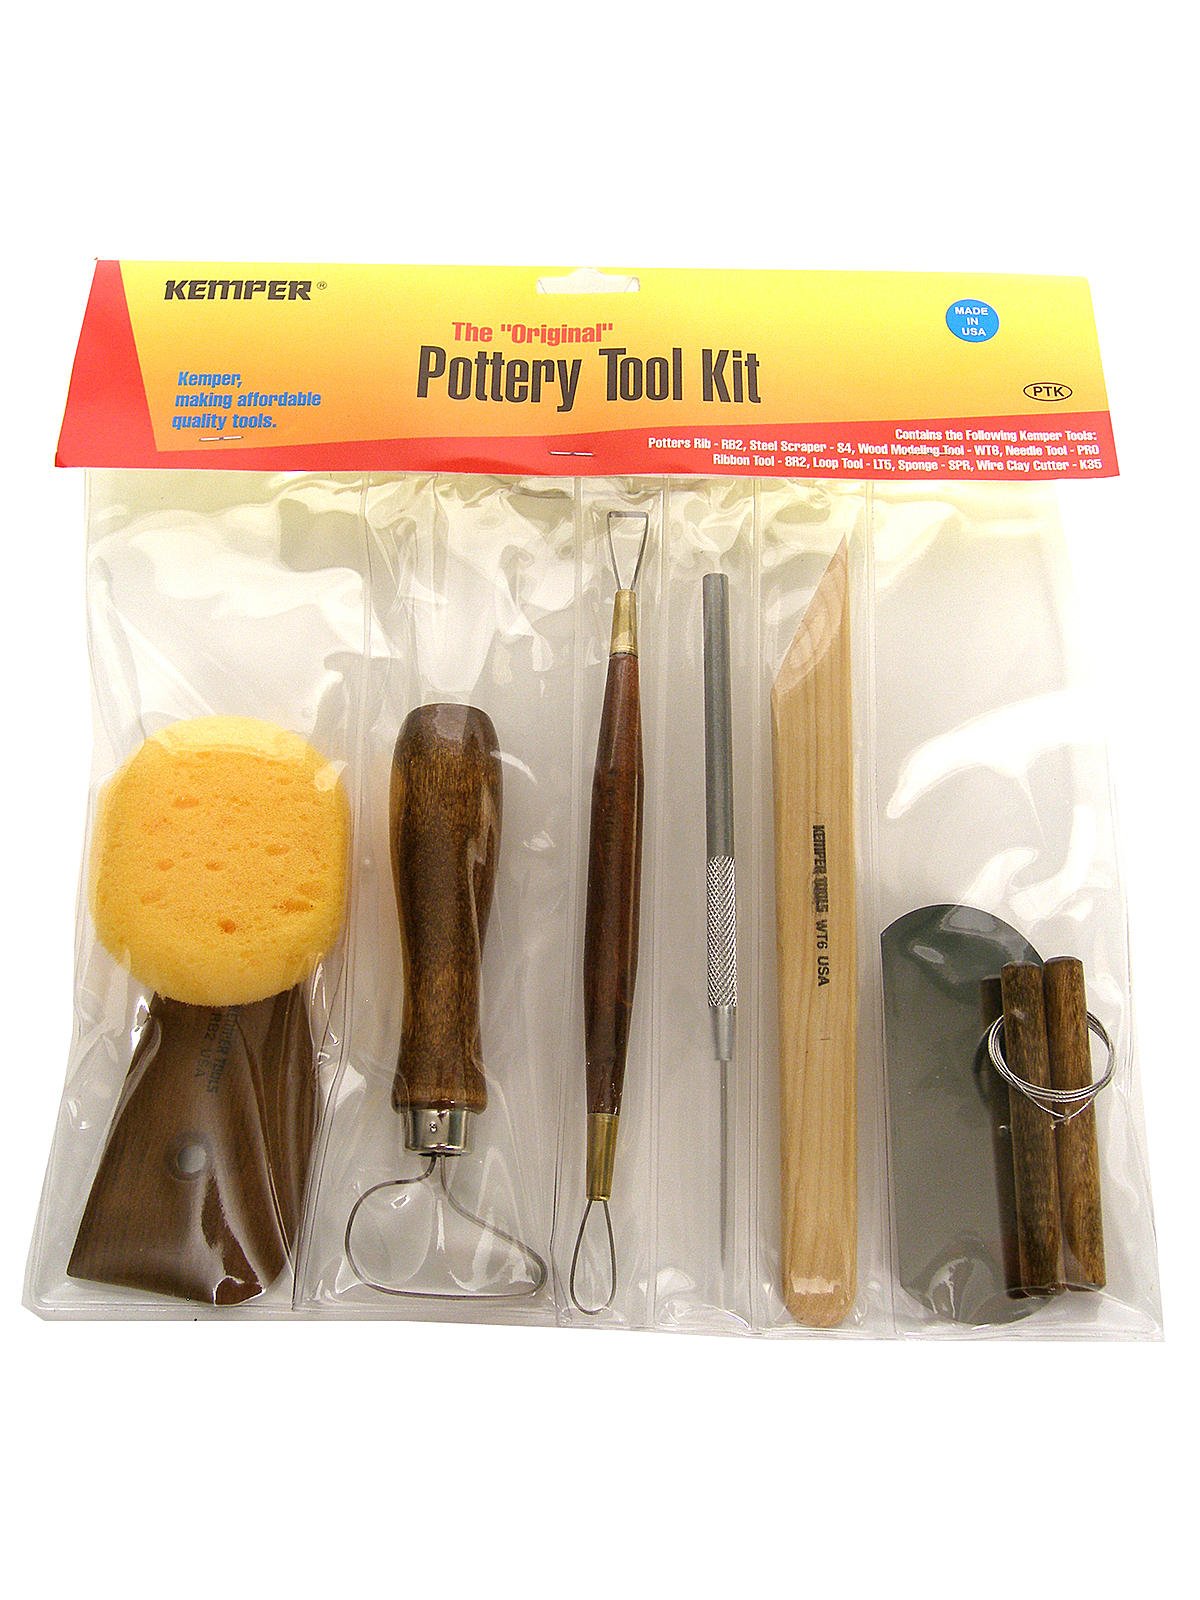  Pottery Kit